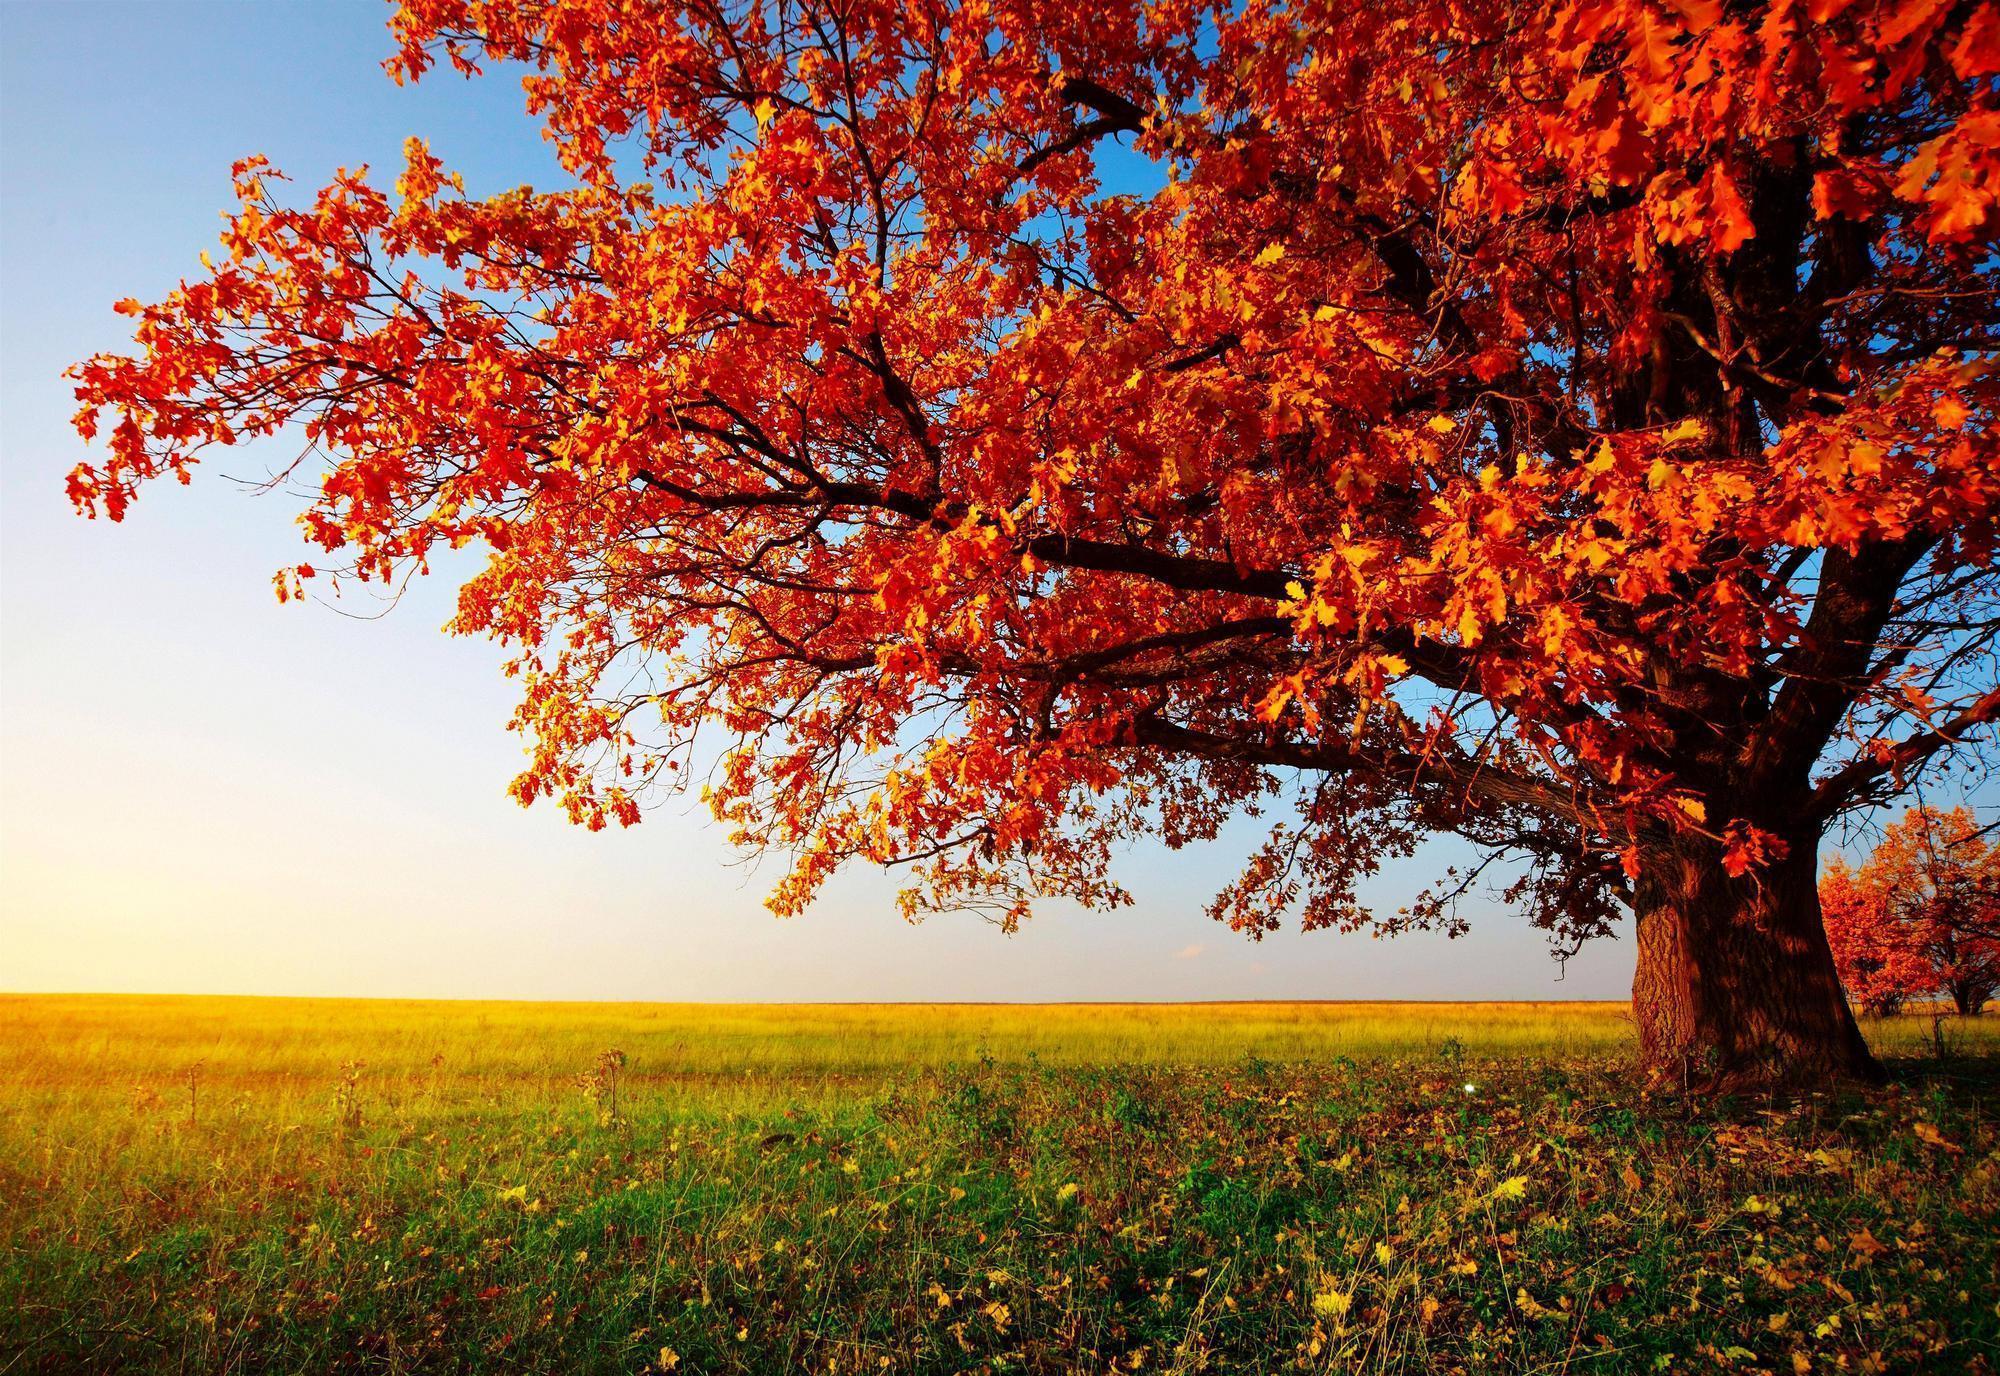 Mùa thu: Mùa thu là mùa của những cảnh quan thiên nhiên rực rỡ với sắc đỏ và vàng. Bạn sẽ cảm thấy như mình đang đi dạo trong một khu rừng đầy màu sắc. Ánh nắng chiếu sáng qua những tán cây và lá rơi sẽ khiến bạn cảm thấy yên bình và thoải mái. Đó chắc chắn là một trải nghiệm thú vị mà bạn không thể bỏ qua.